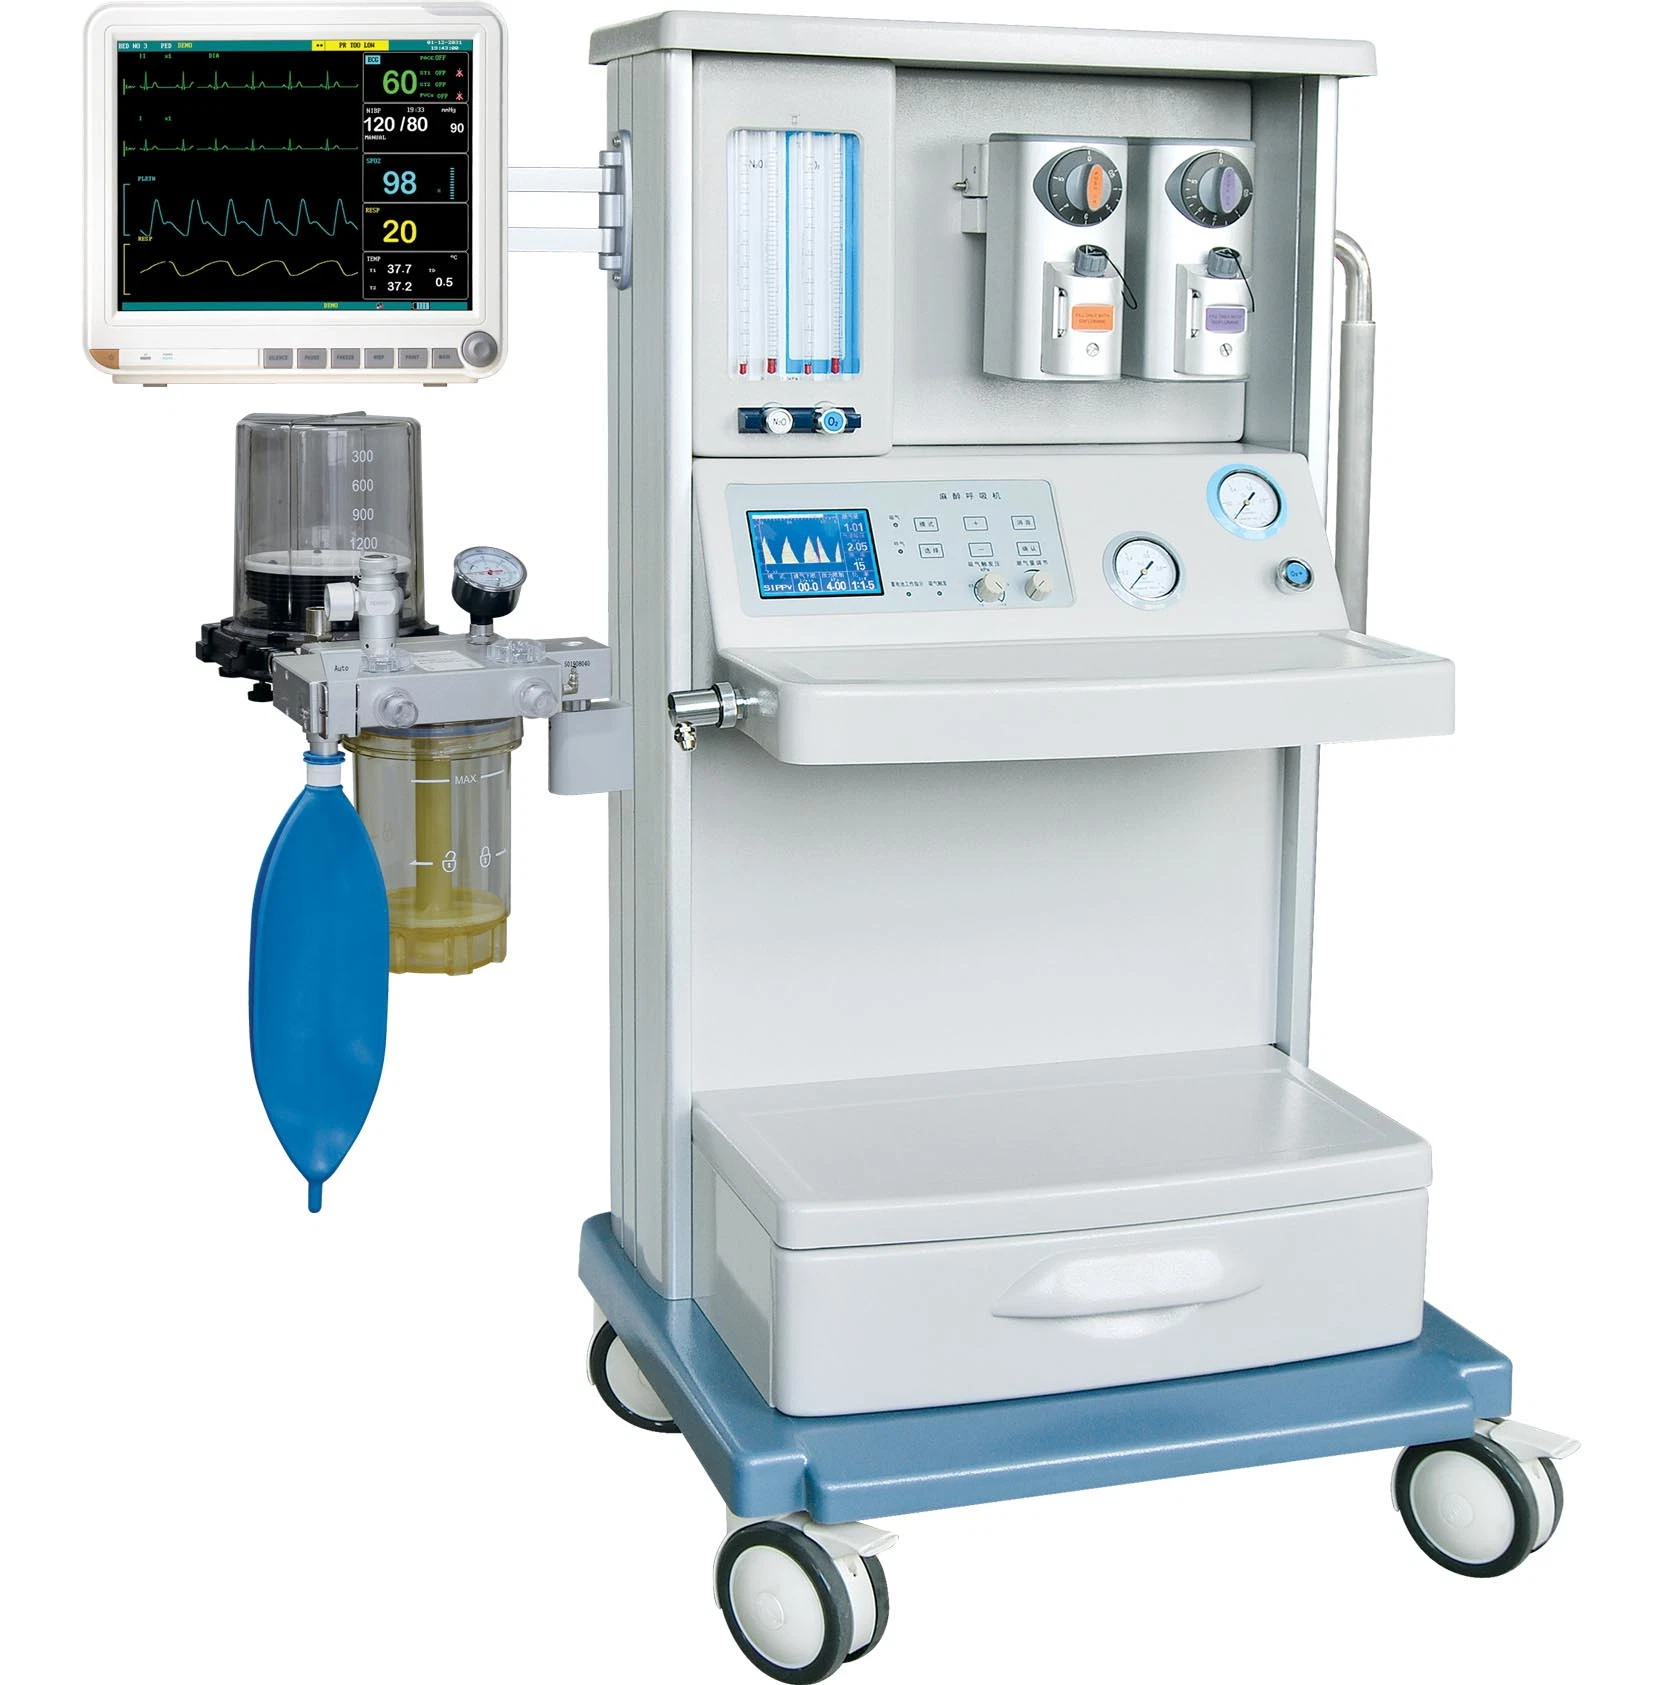 Equipo Médico del Hospital La anestesia quirúrgica Máquinas aparato dispositivo instrumento